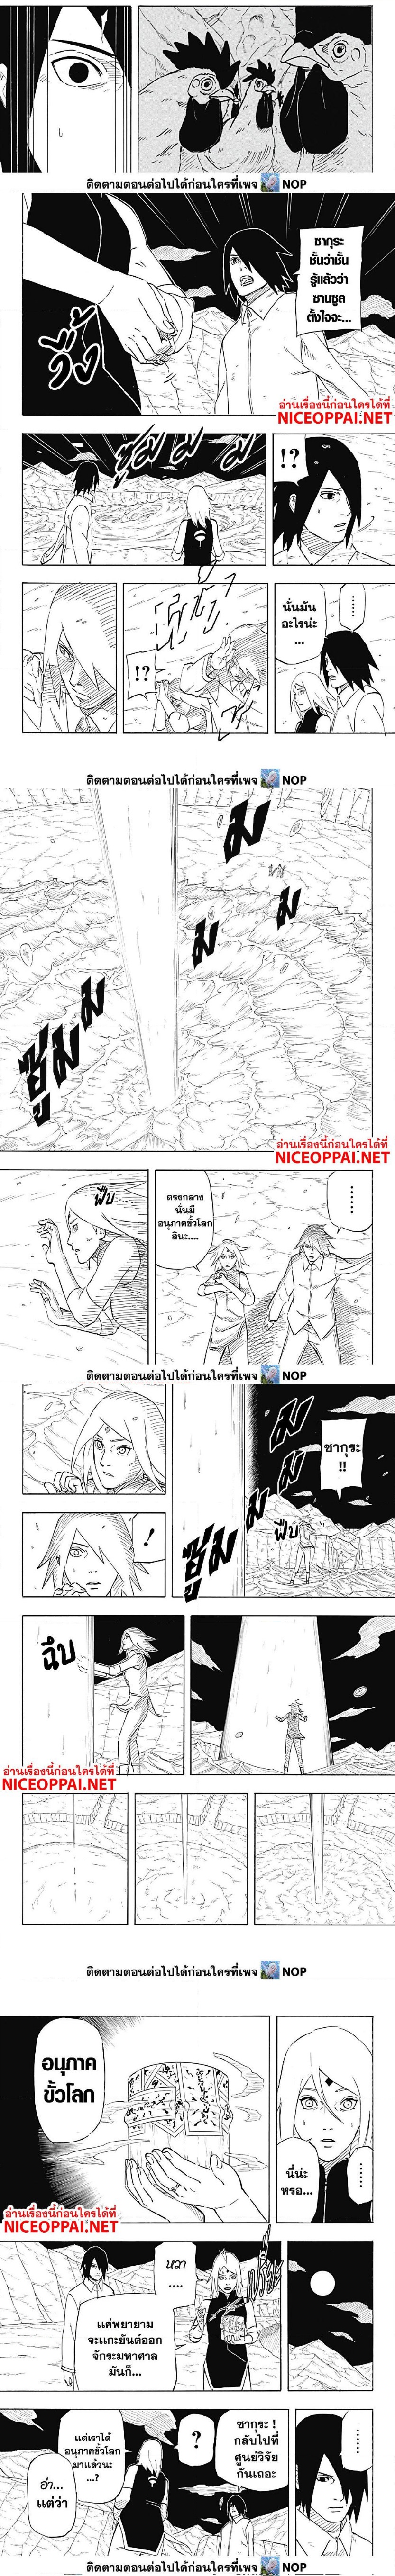 Naruto Sasuke’s Story 6.2 (4)